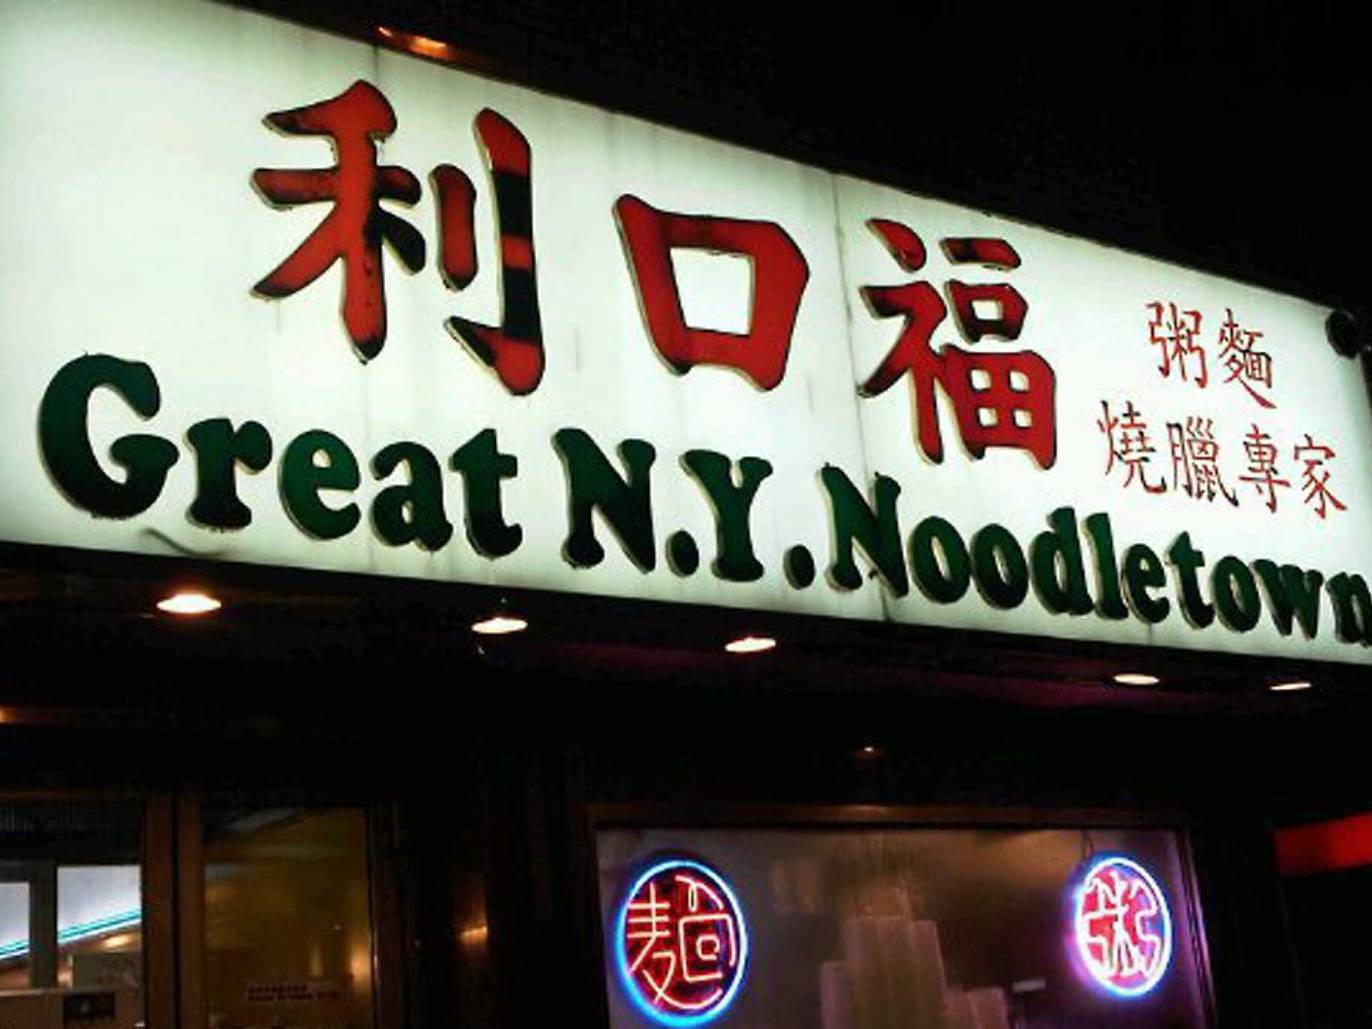 10 Best Chinatown Restaurants in NYC in 2021